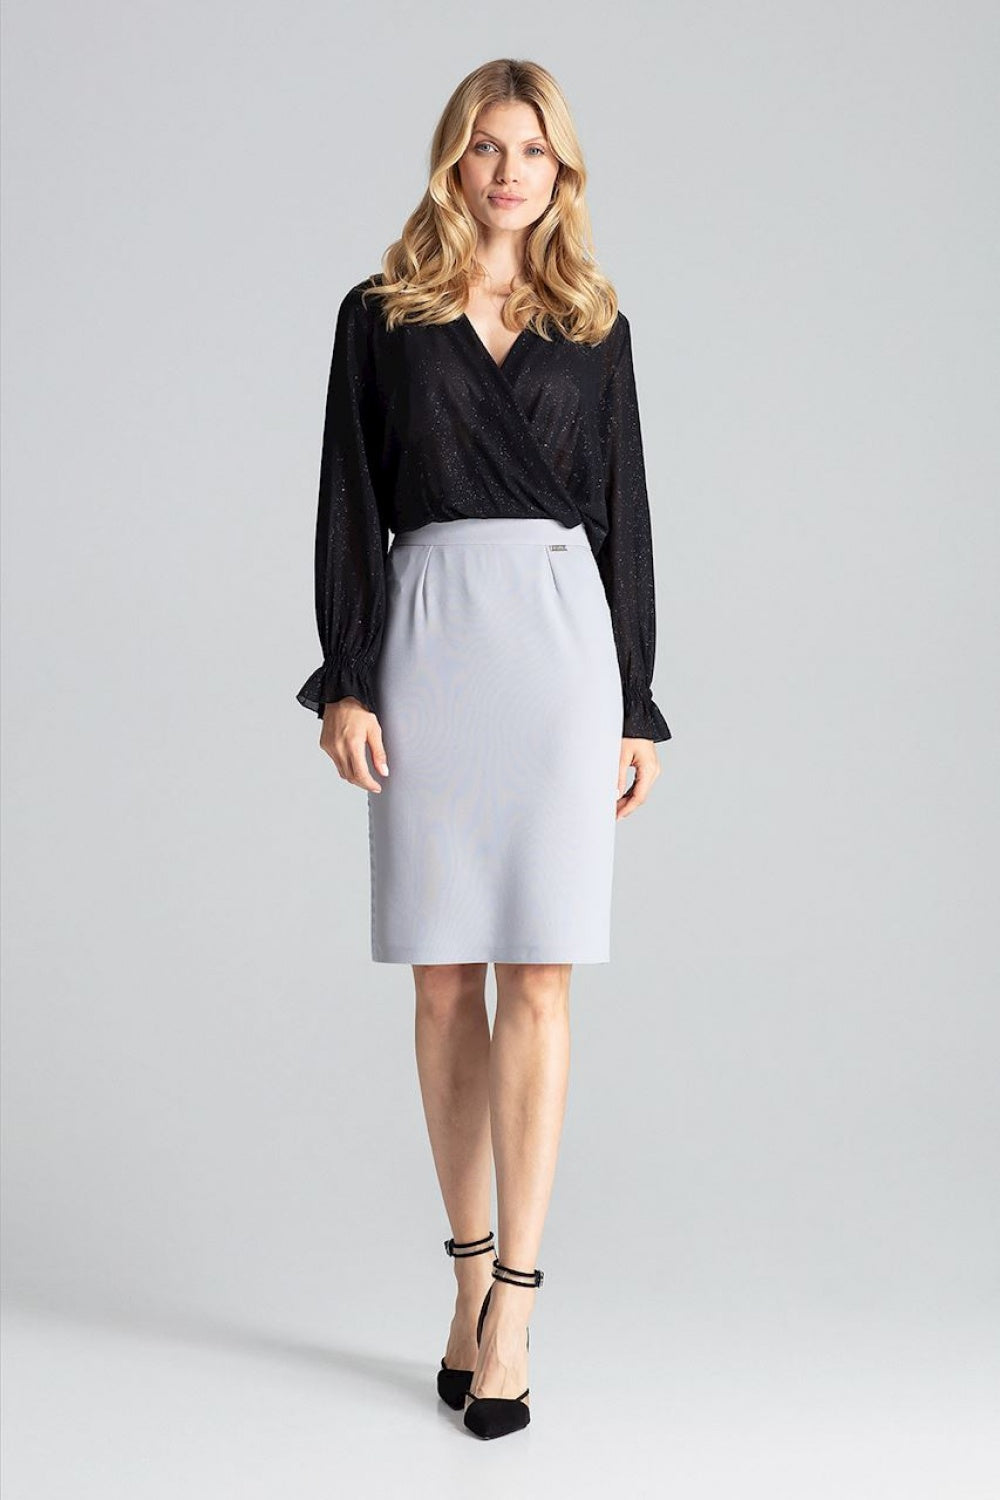 Skirt model 138288 Elsy Style Skirts